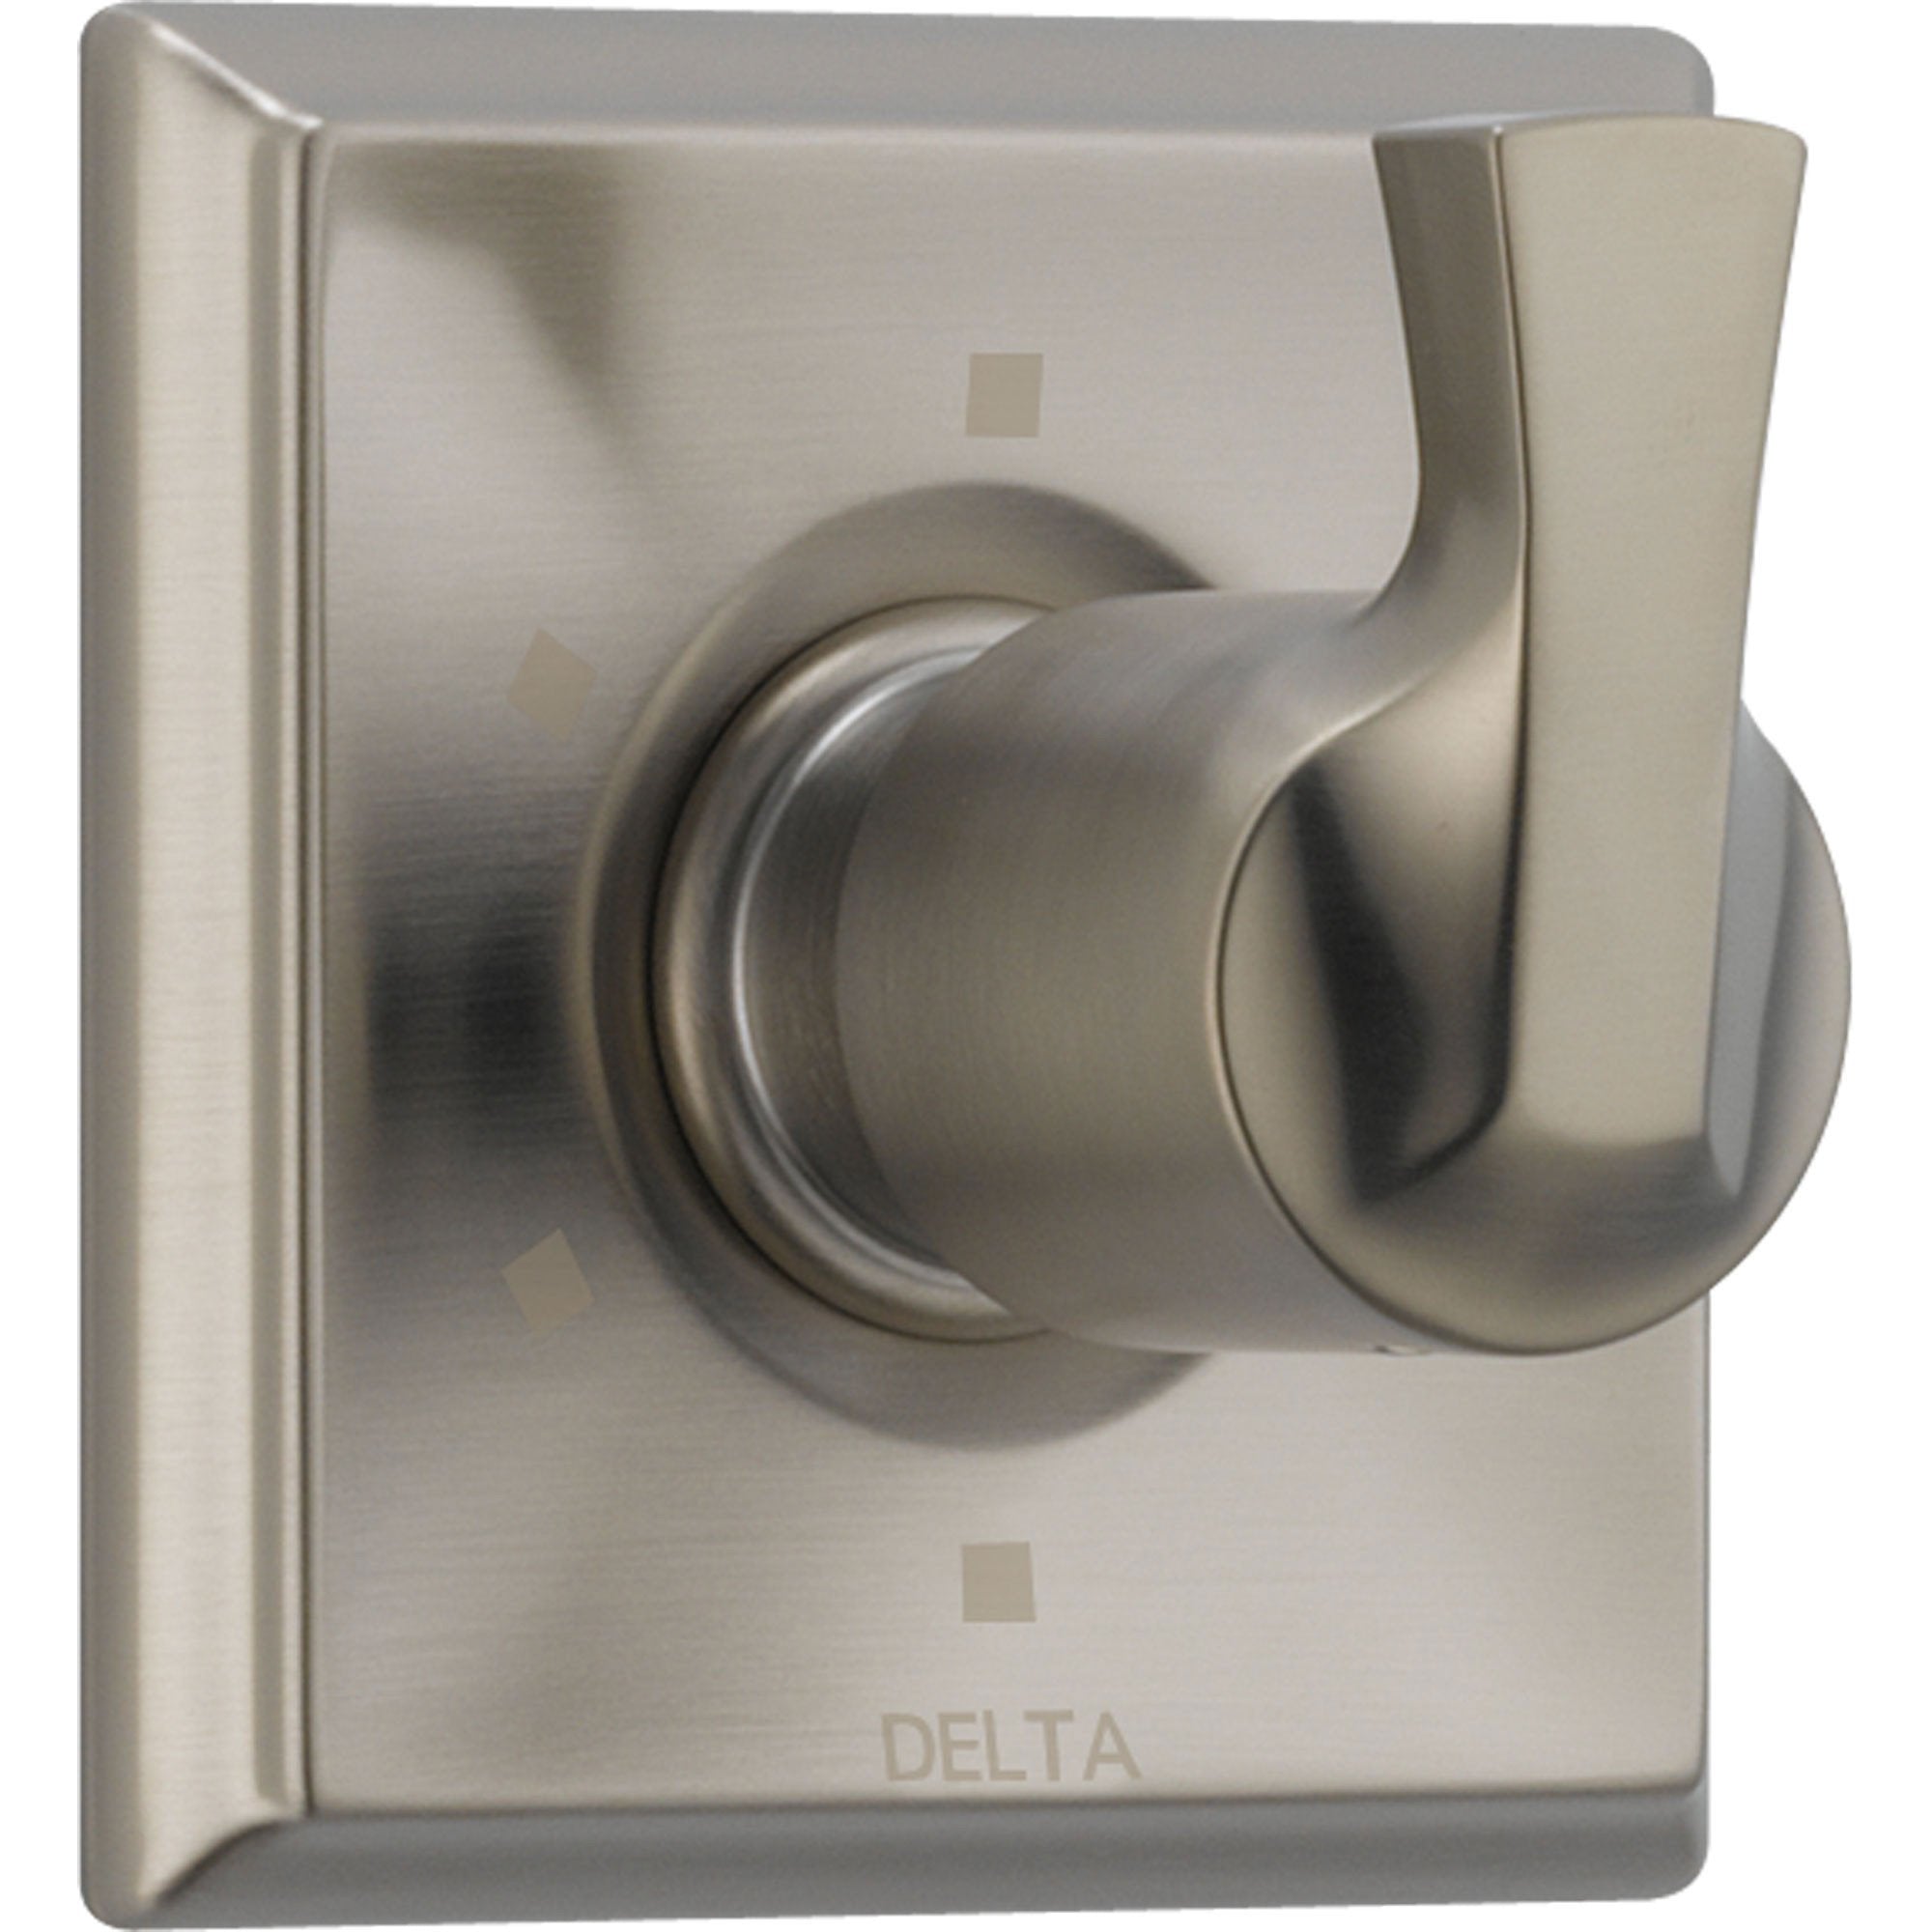 Delta 6-Setting Stainless Steel Finish 1-Handle Shower Diverter Trim Kit 560986